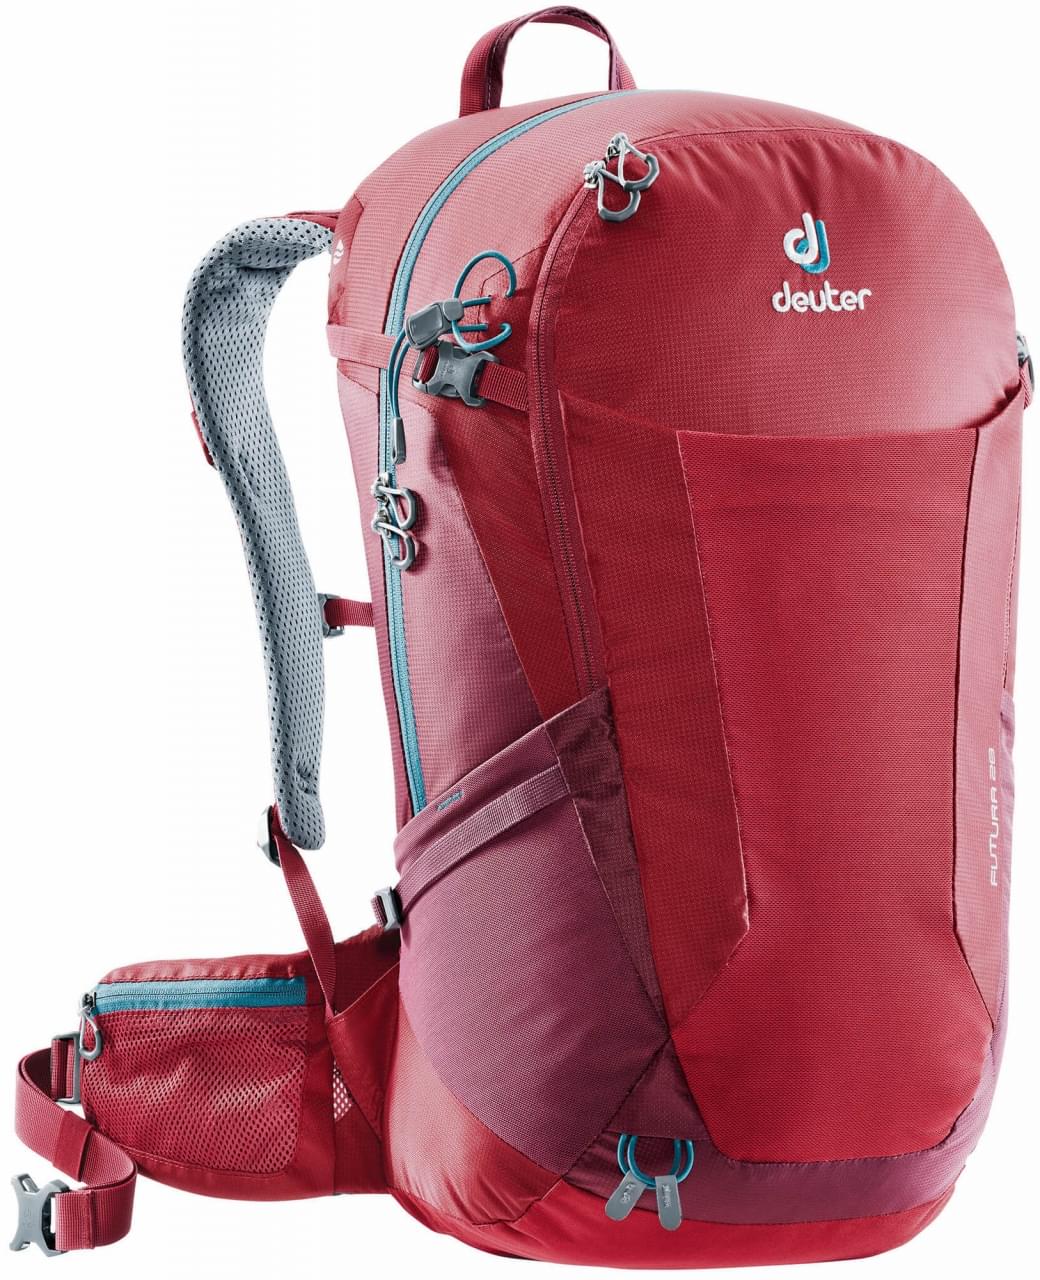 Deuter Futura 28 Backpack cranberry / maron backpack online kopen